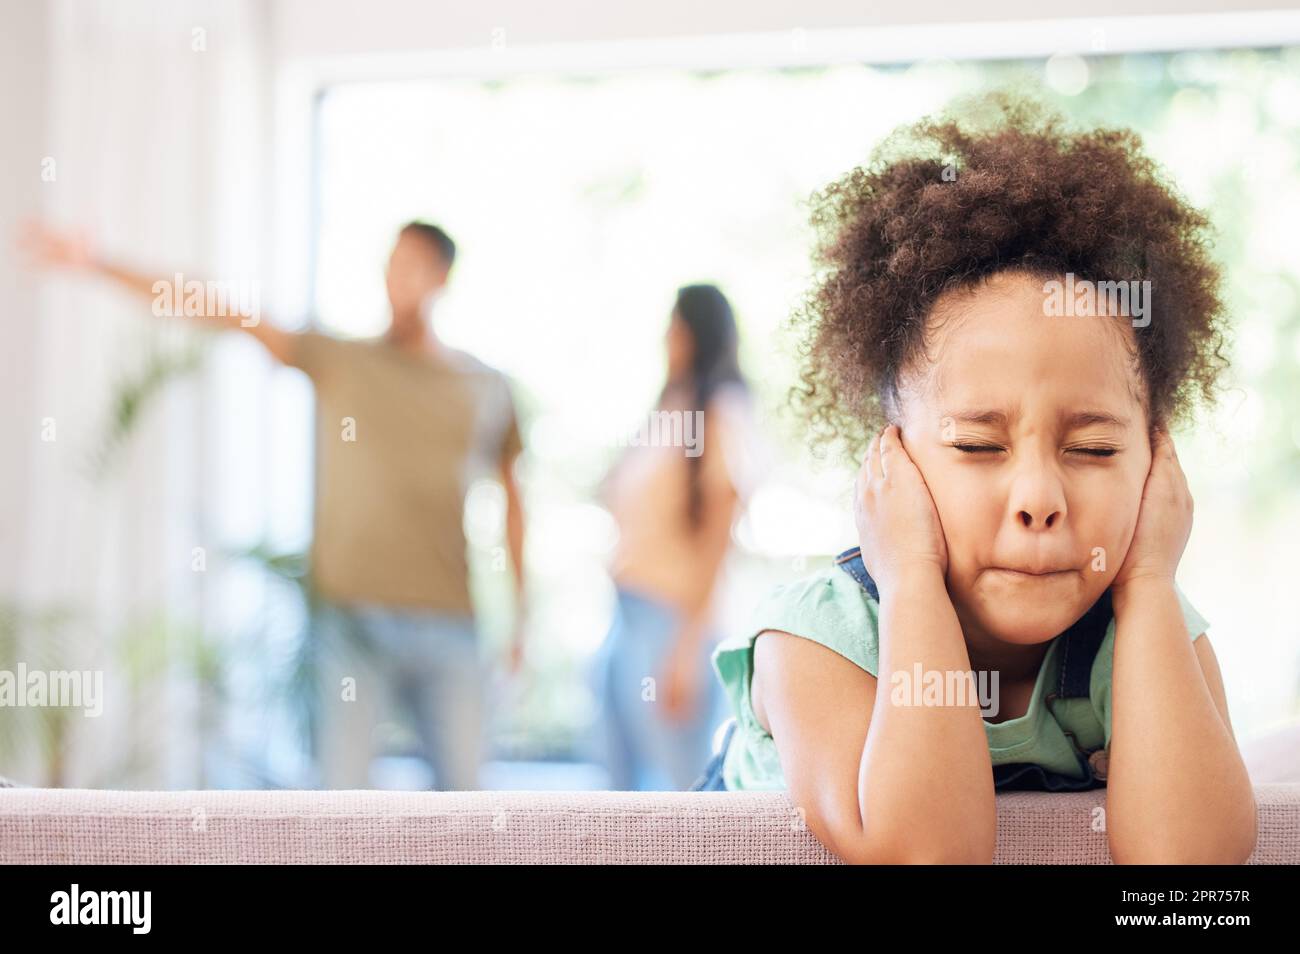 J'ai eu l'habitude des bloquer. Photo d'une petite fille couvrant ses oreilles pendant que ses parents se disputent en arrière-plan. Banque D'Images